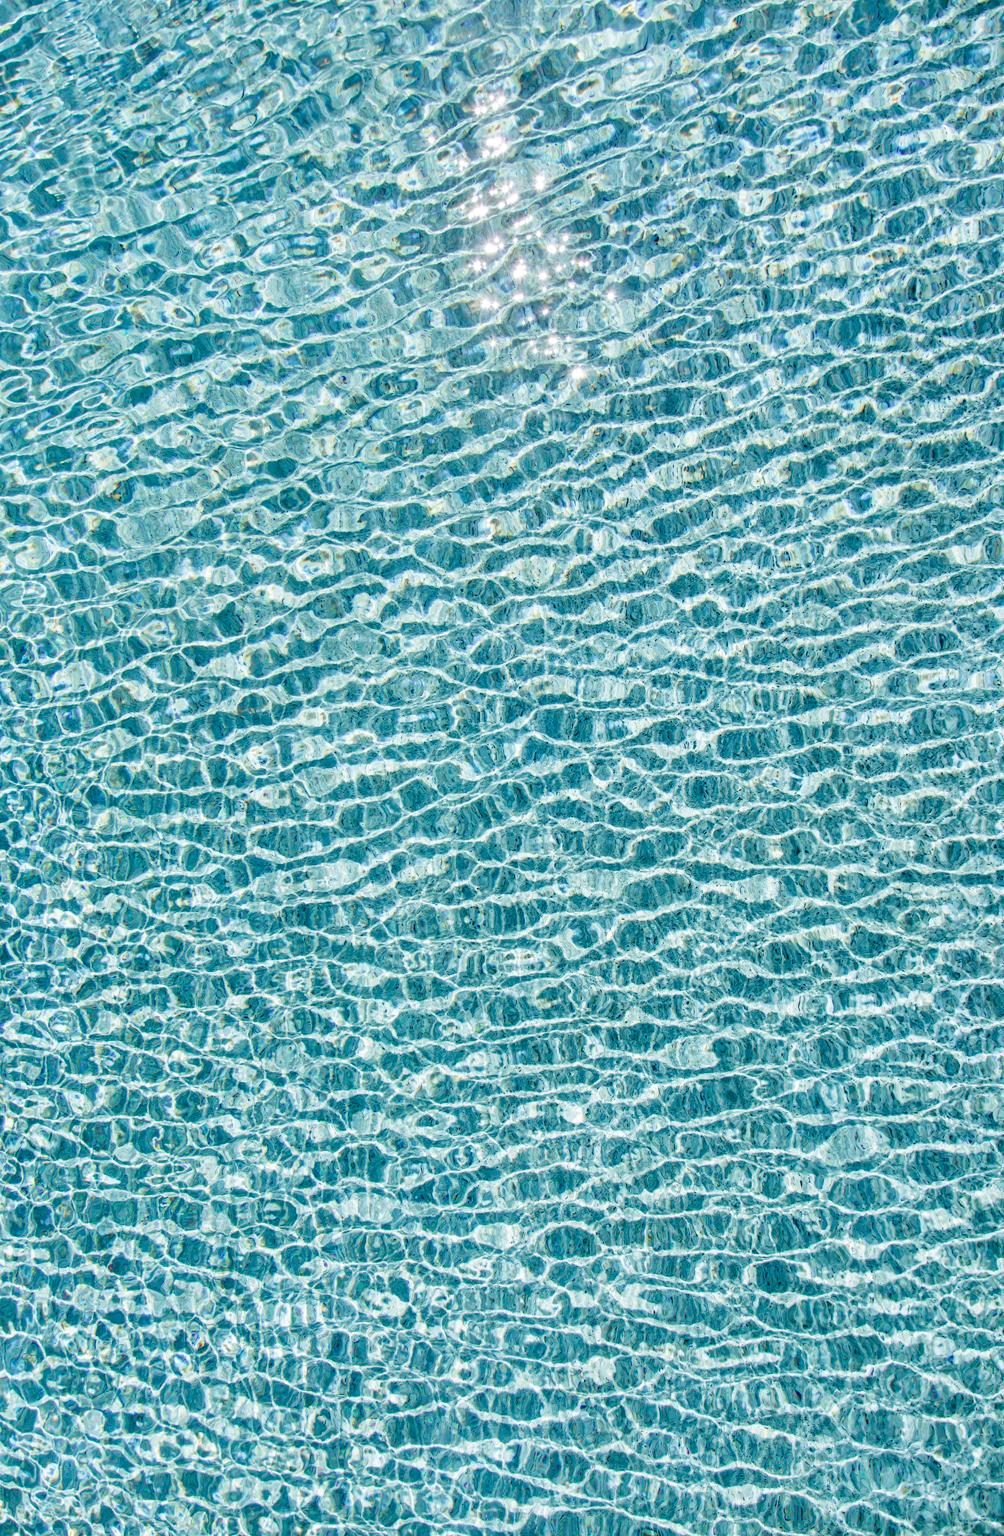 H2O V - Großformatfotografie von Sonnenspiegelungen auf der Wasseroberfläche eines Pools – Photograph von Erik Pawassar